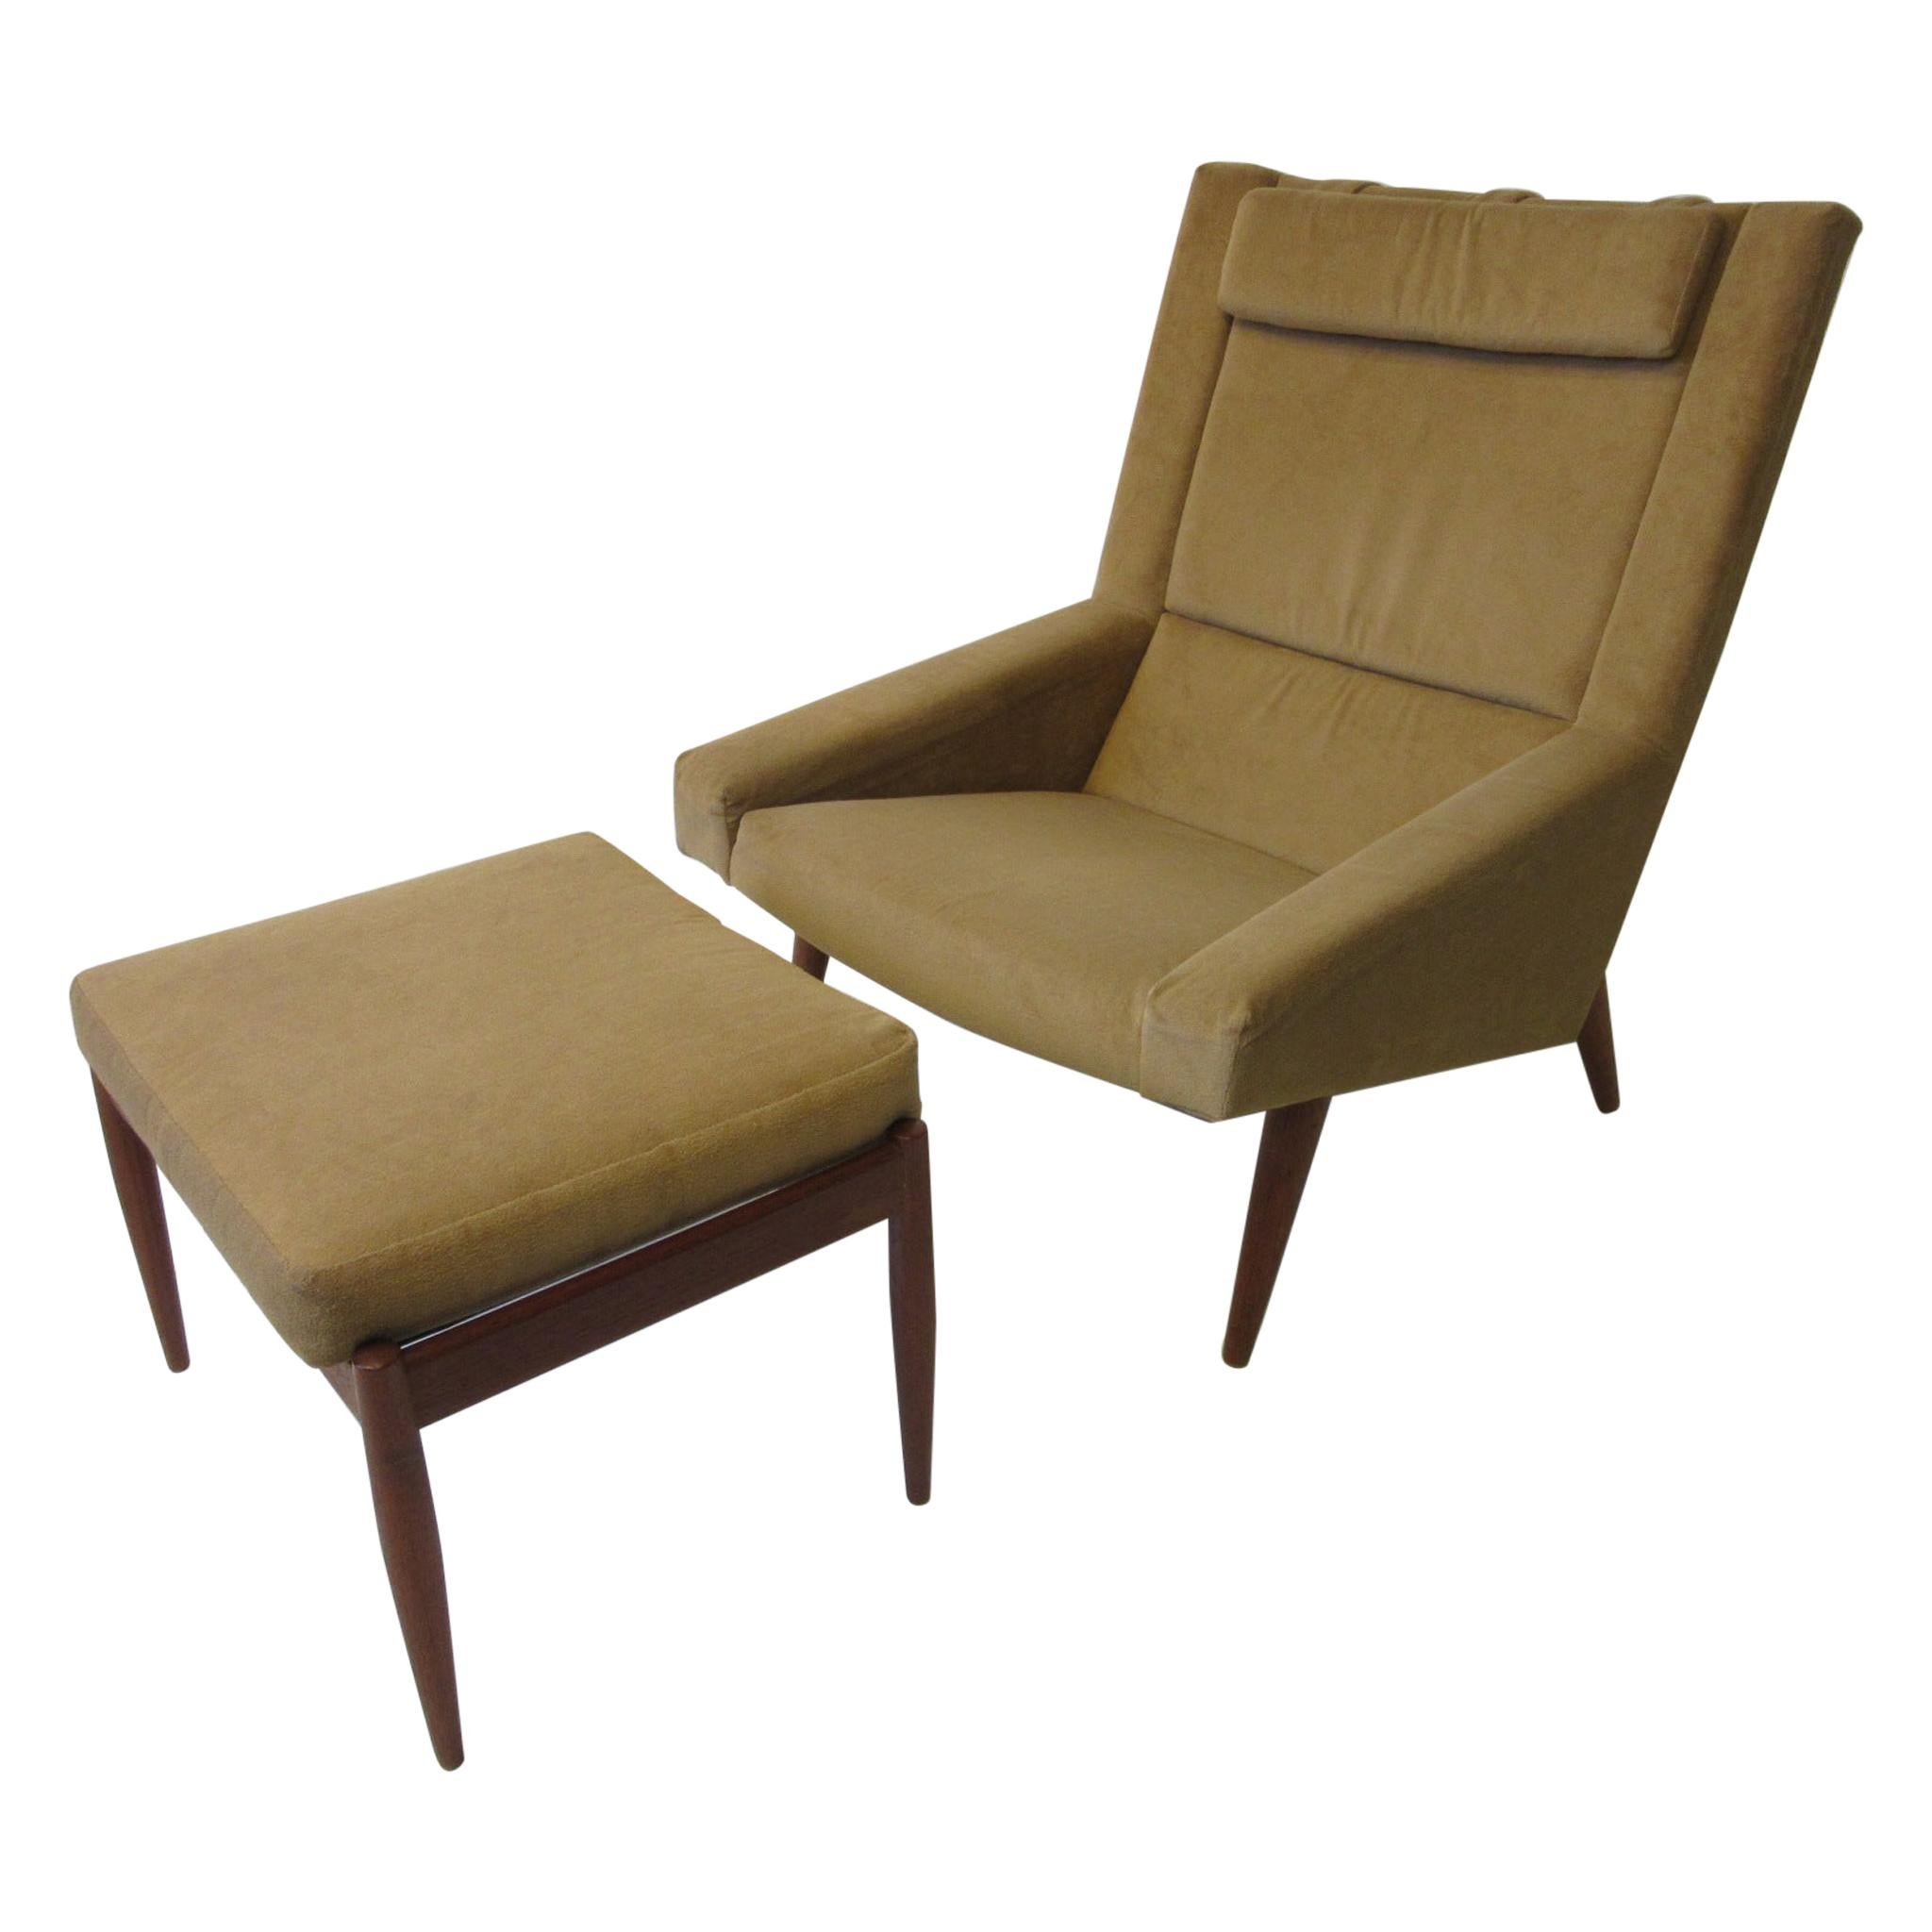 Illum Wikkelso Lounge Chair / Ottoman for Soren Willadsen, Denmark